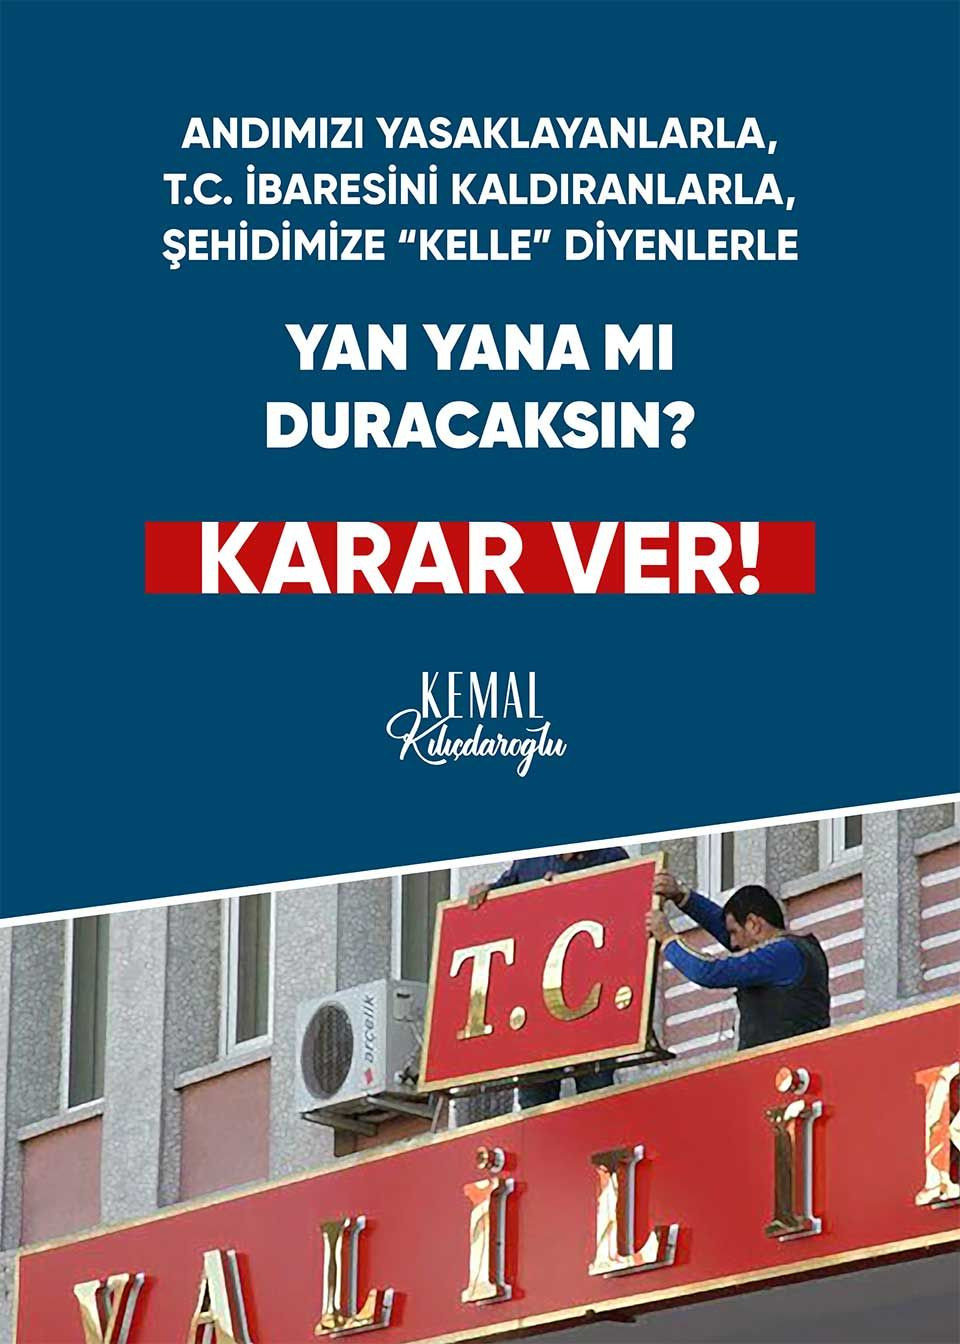 Kılıçdaroğlu'nun seçim sloganı 'Karar ver': 9 başlıkta afiş hazırlandı - Sayfa 4